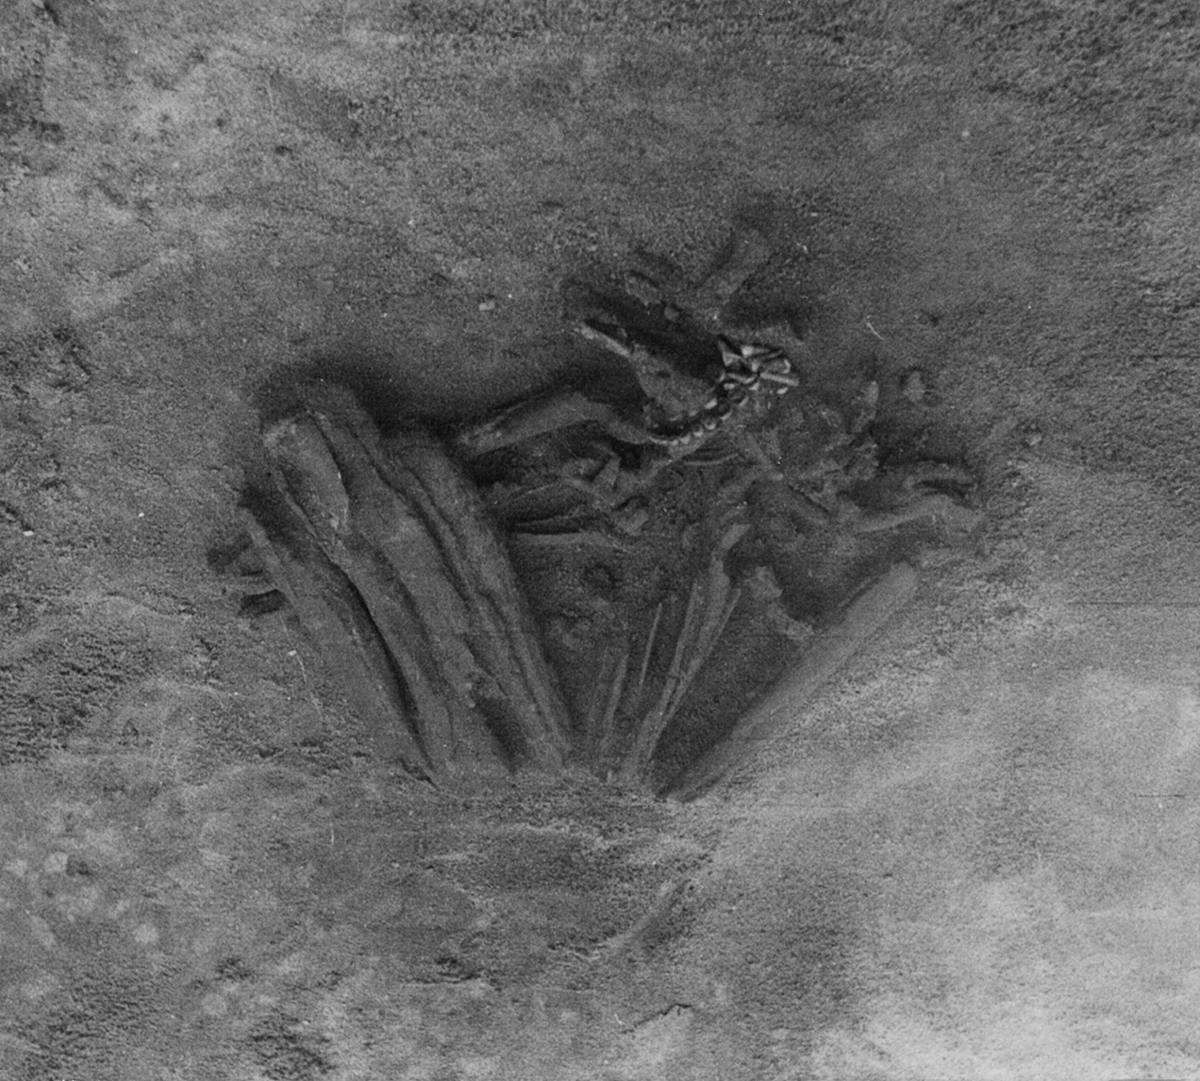 Археолози сада верују да су 8,000 година стари људски скелети из Португала најстарије мумије на свету 2